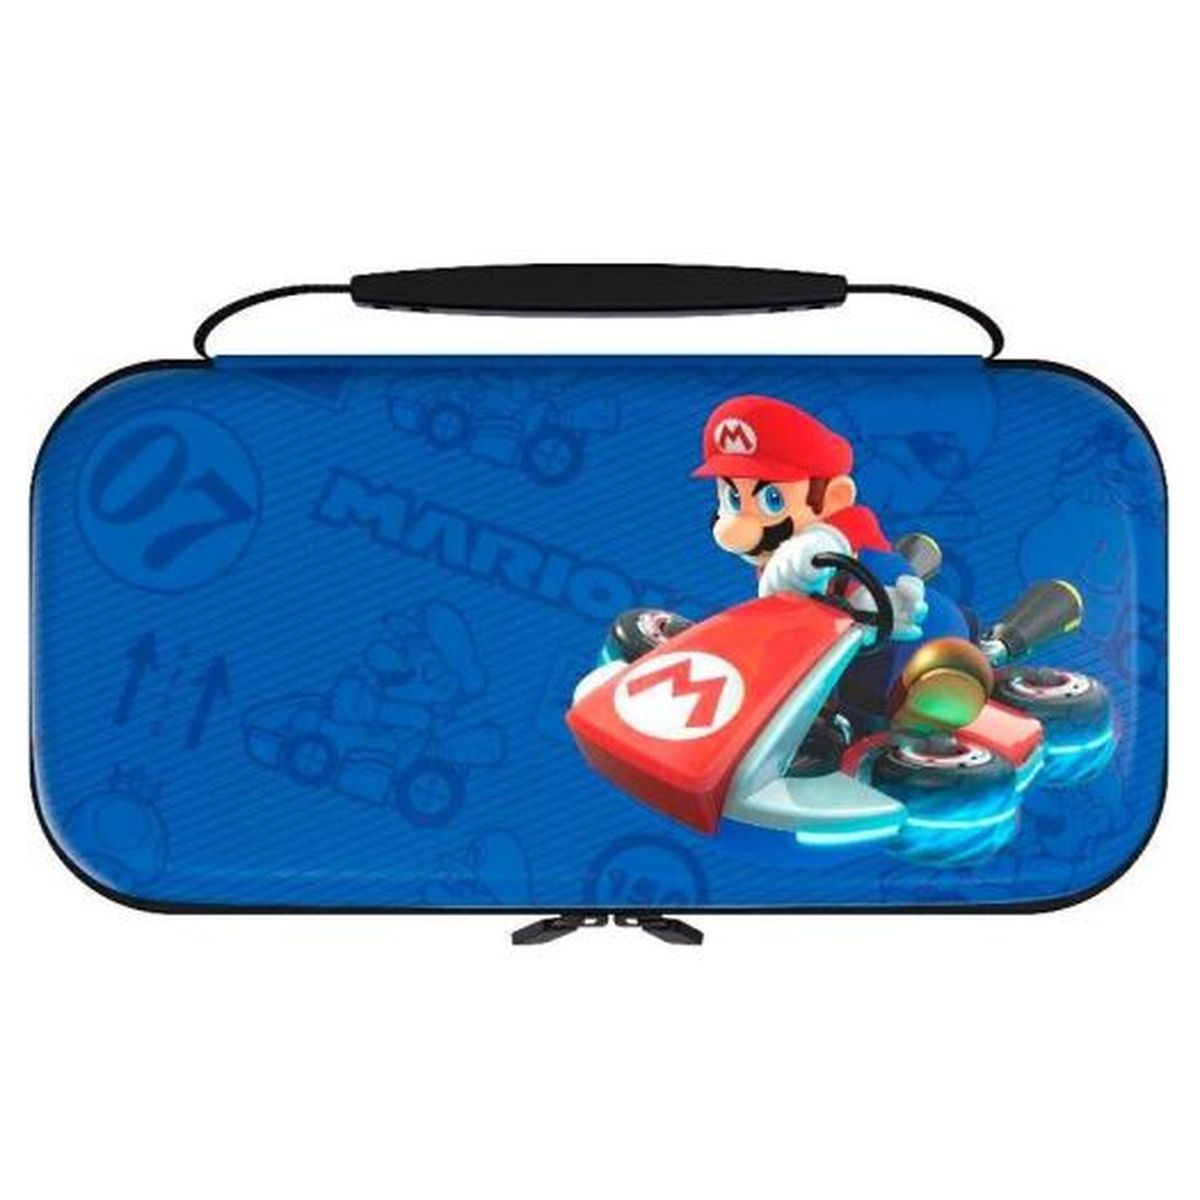 Cet adorable étui Nintendo Switch Super Mario est vraiment pas cher